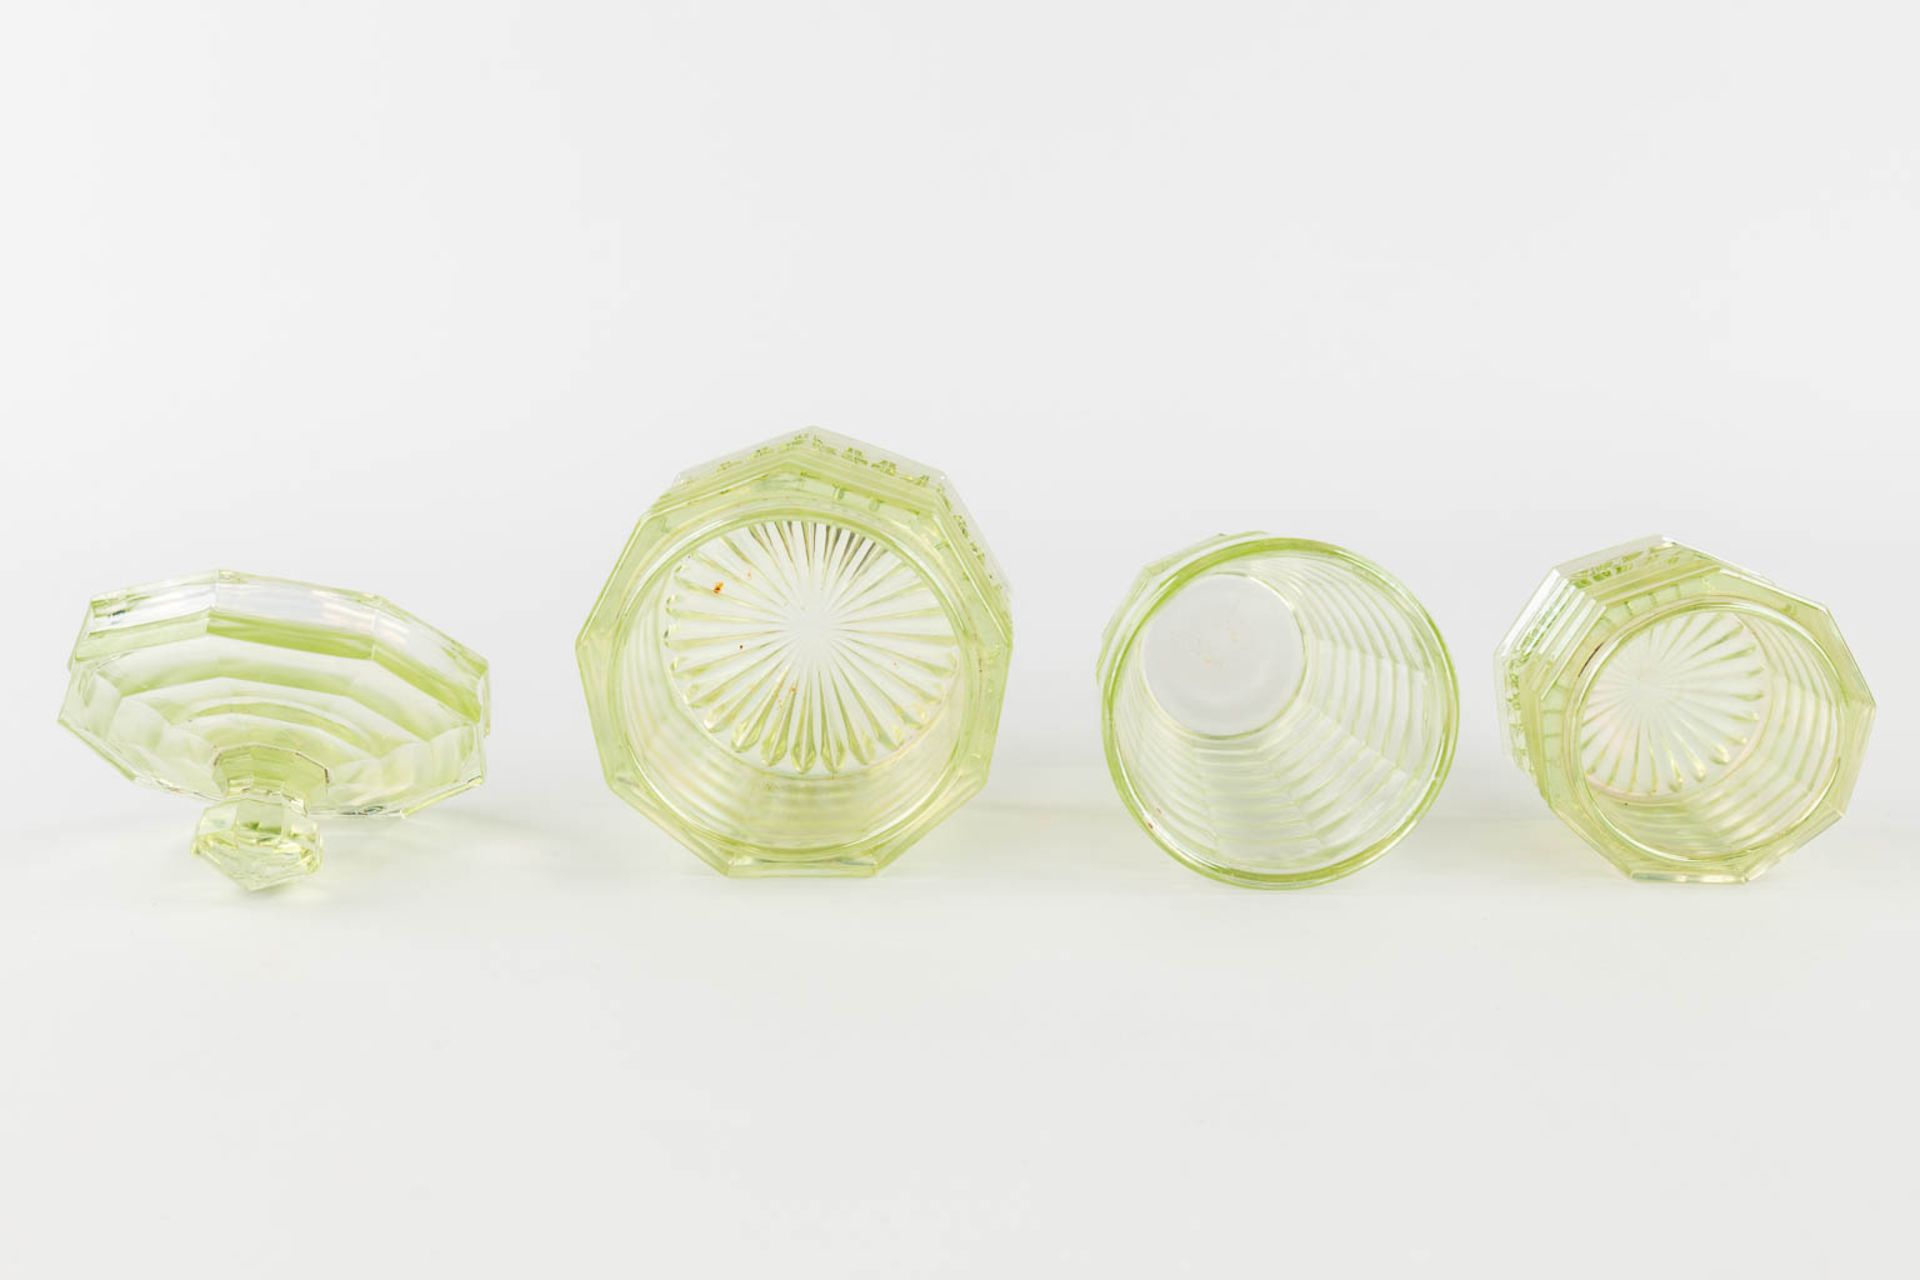 A 9-piece perfume set, made of Uranium glass. (H:21 x D:9 cm) - Image 12 of 15